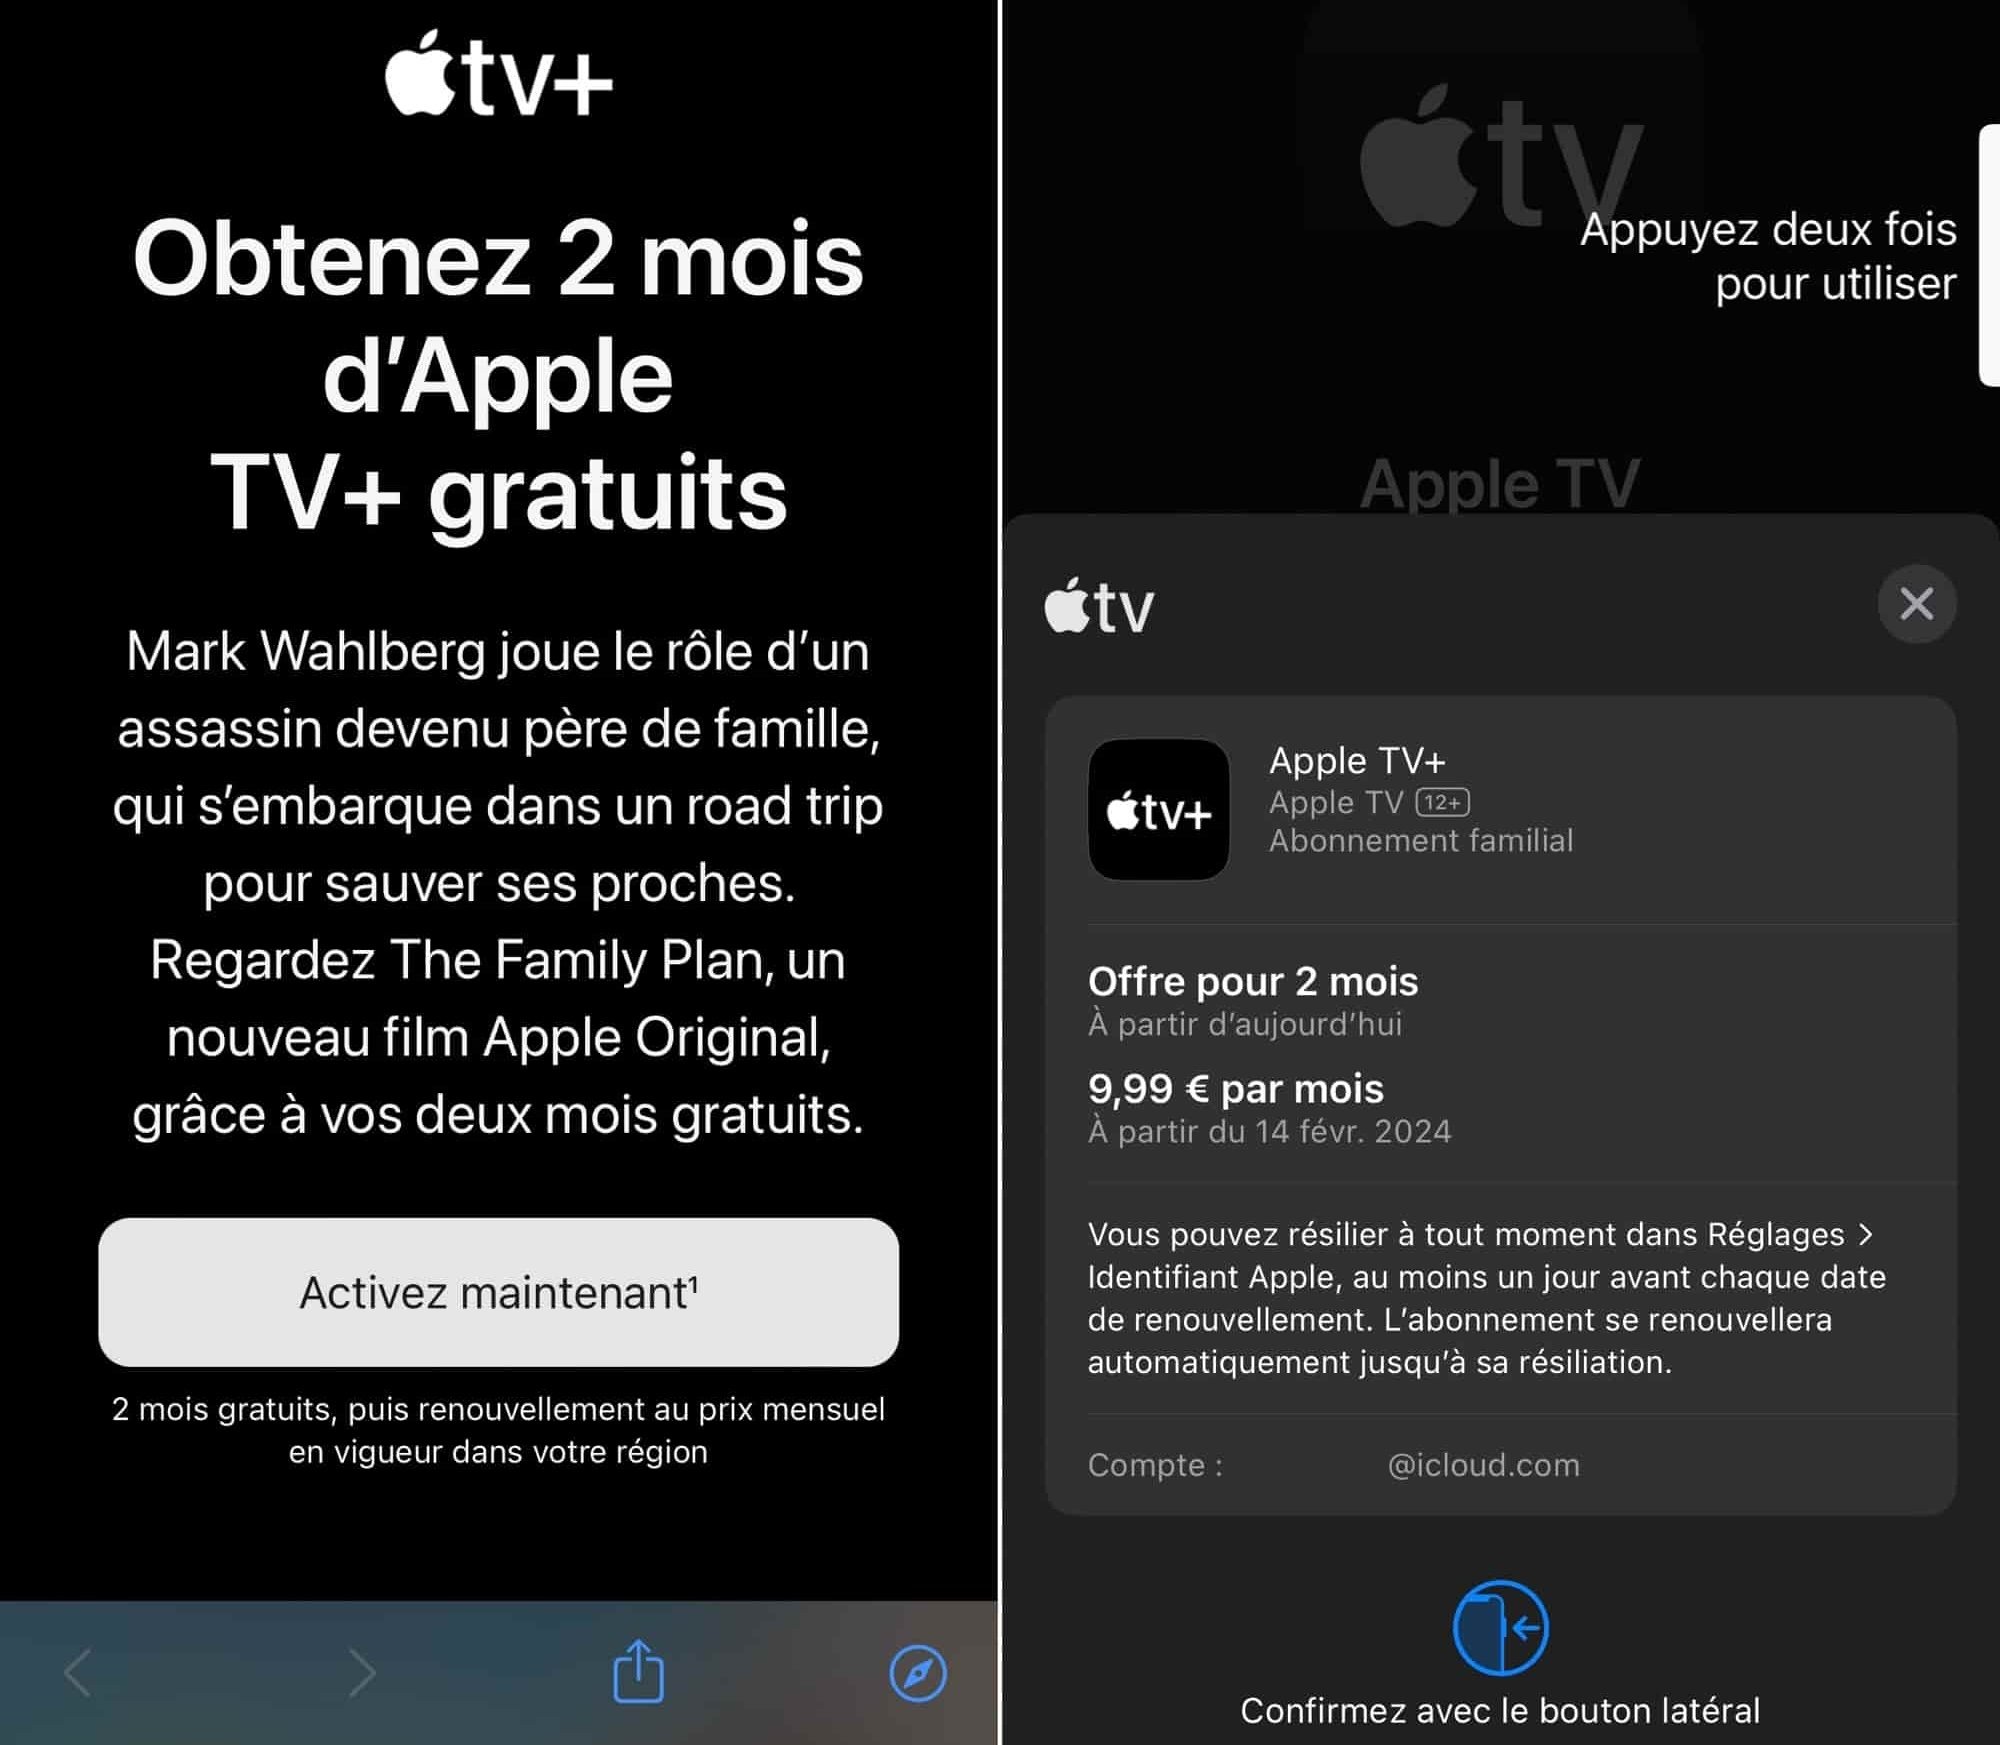 Offre spéciale Apple TV+